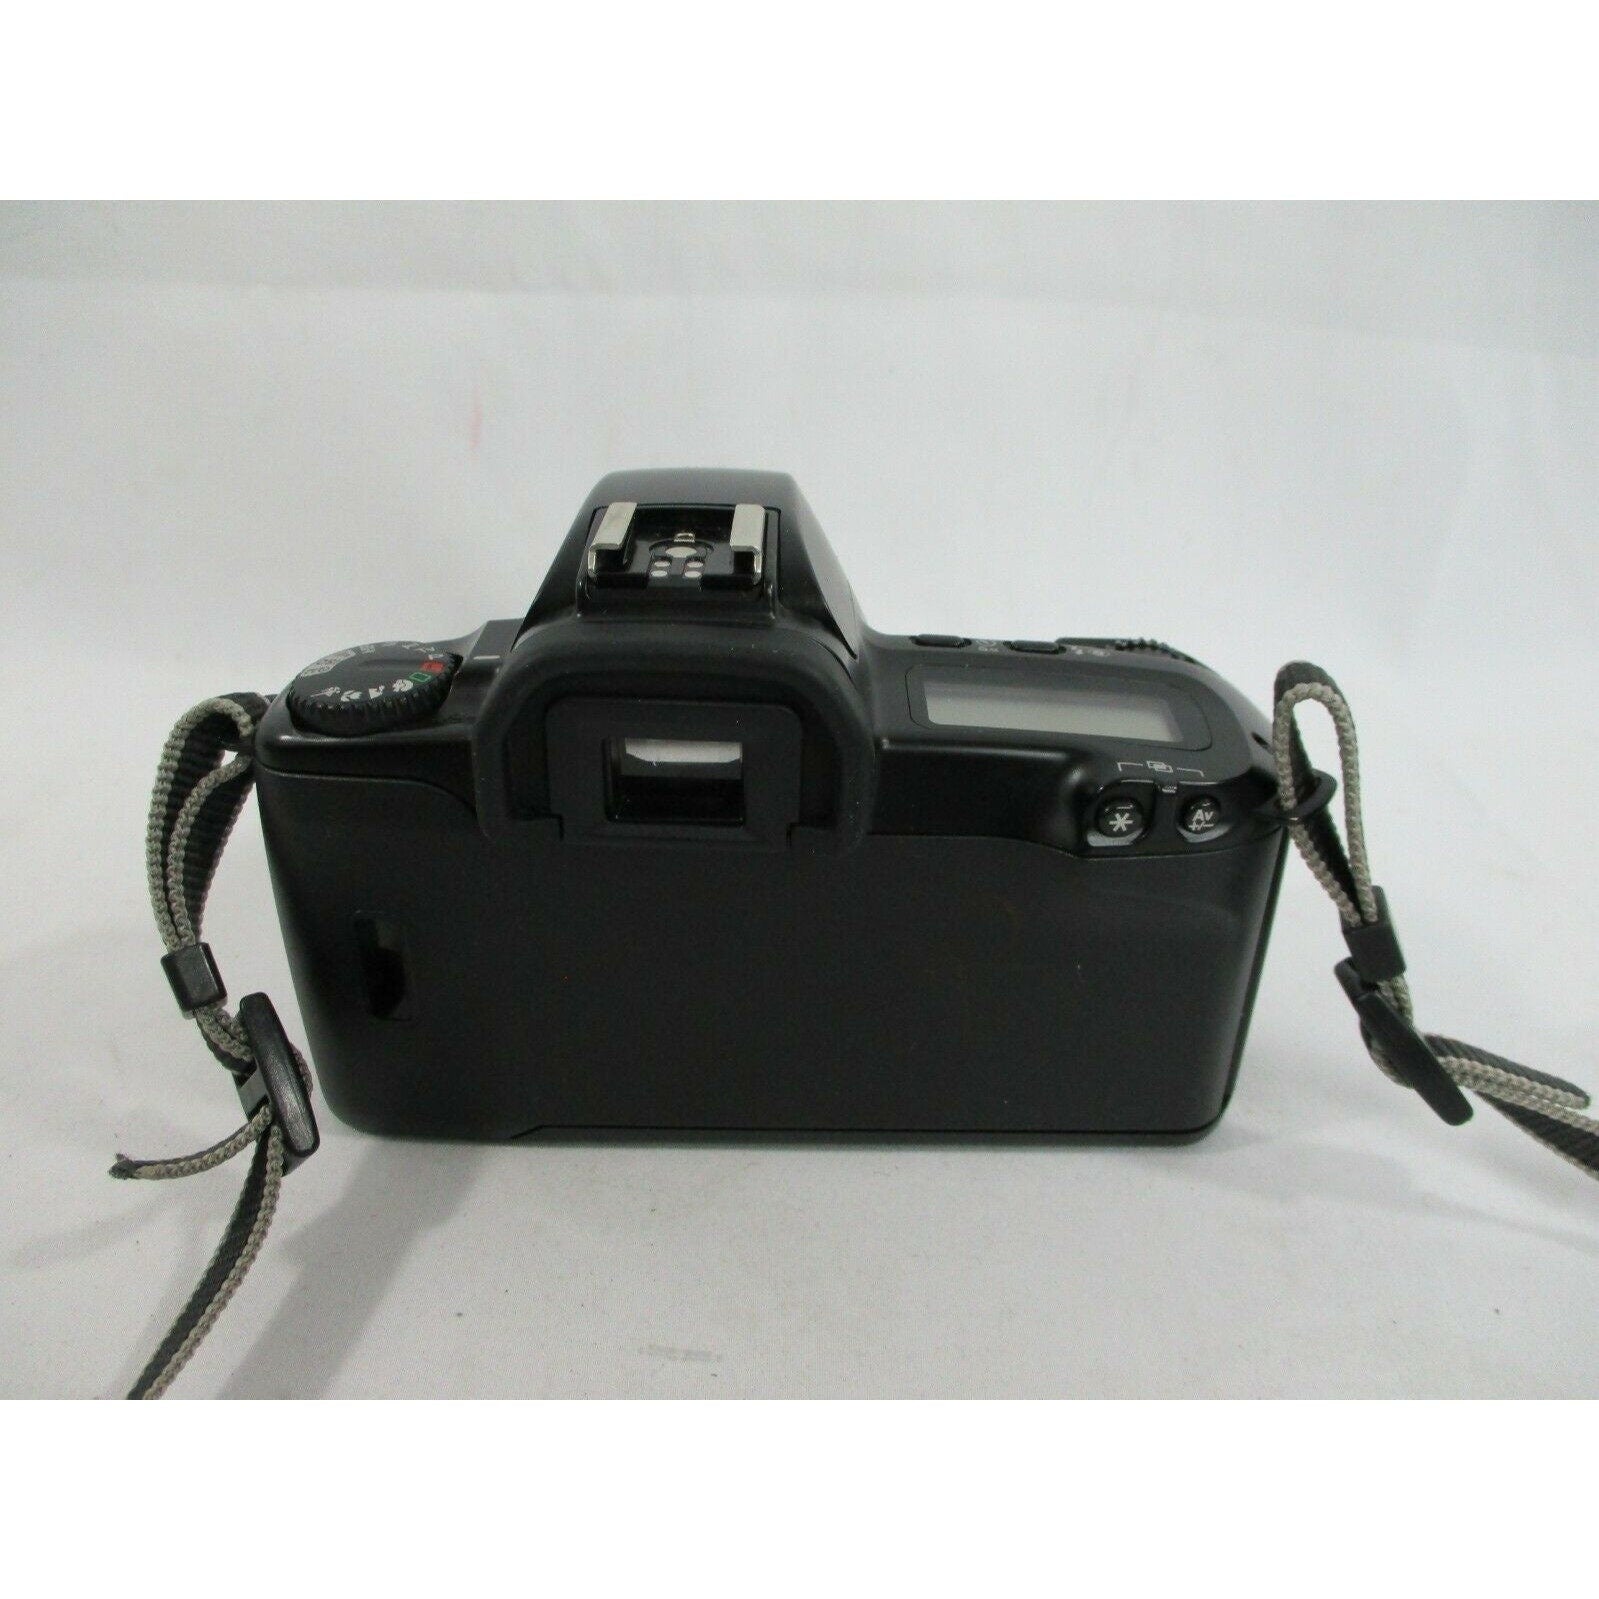 Canon EOS Rebel X SLR 35mm Film Camera Body